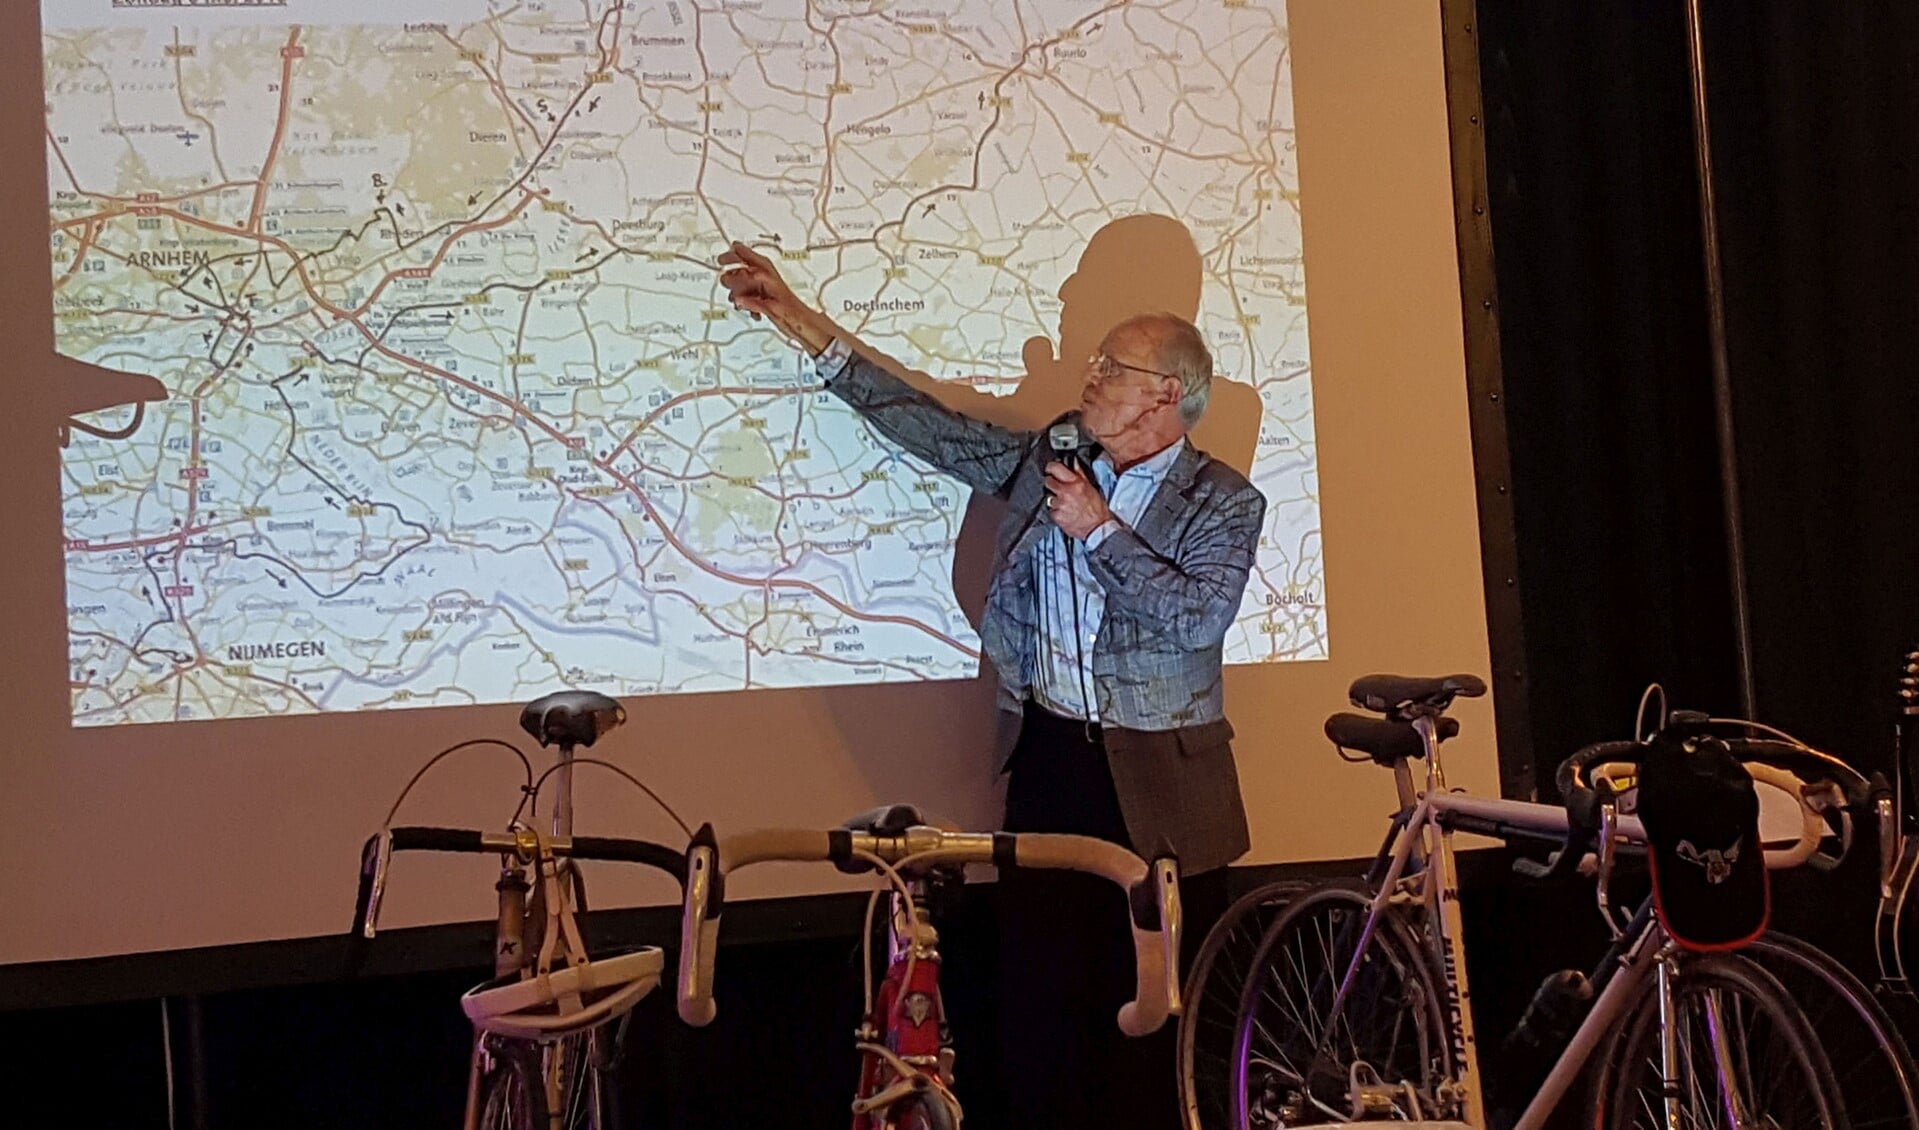 Herman Brinkhoff geeft uitleg over de derde etappe van de Giro. Foto: Hans HIssink